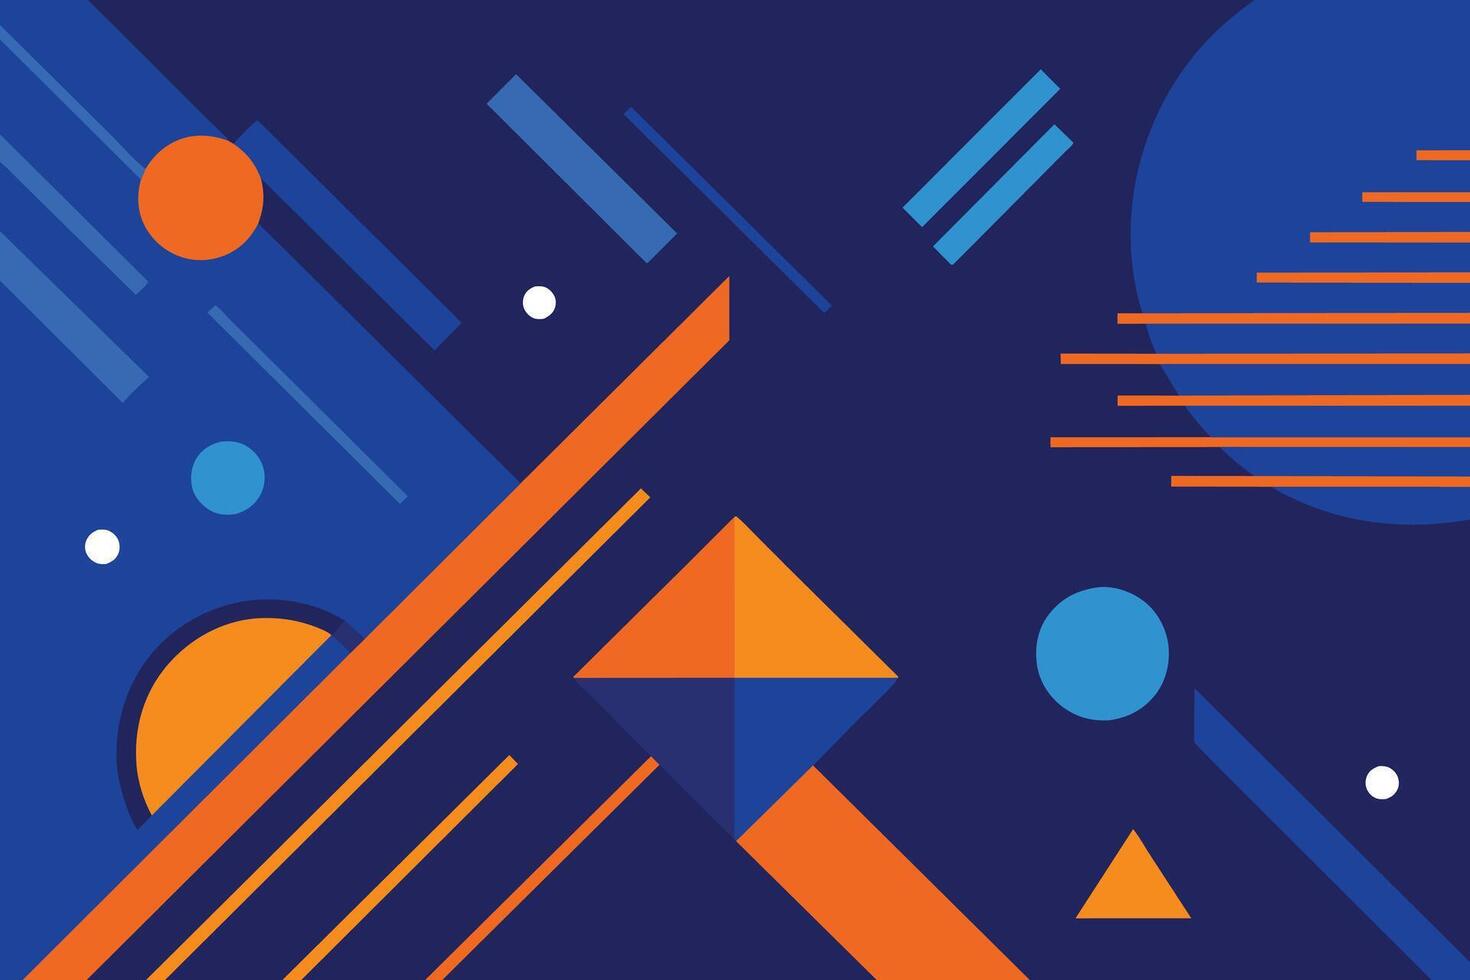 mínimo geométrico fundo. dinâmico azul formas composição com laranja linhas. abstrato fundo moderno hipster futurista gráfico. vetor abstrato fundo textura Projeto